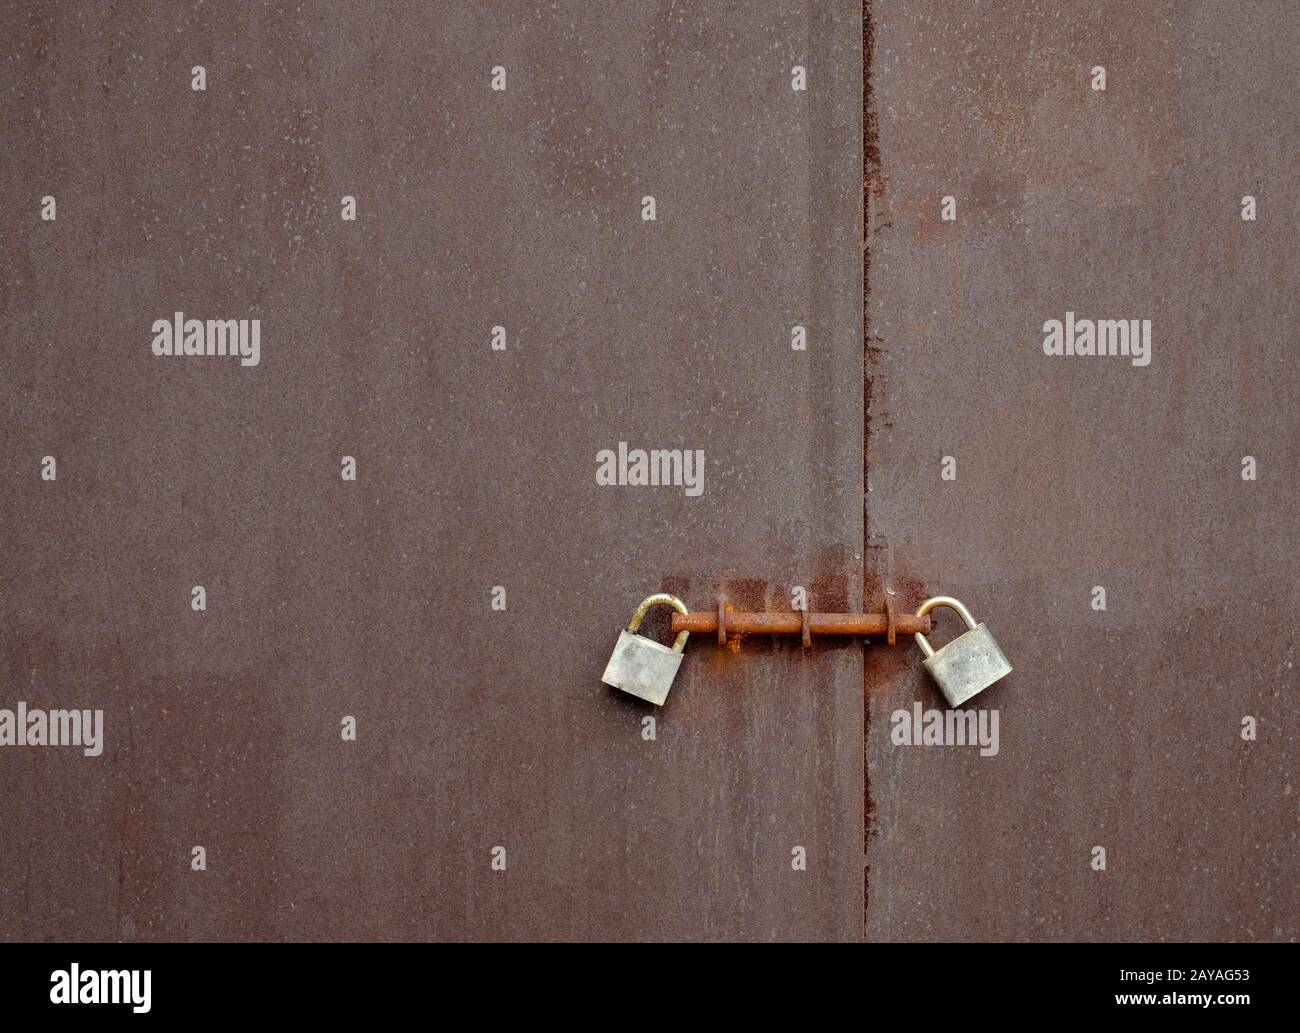 Türen mit doppelten Paddlocks und Schrauben, streng geheim gehaltenen Inhalten, Riemen und Klammern, Einstellung zur Sicherheit. Stockfoto